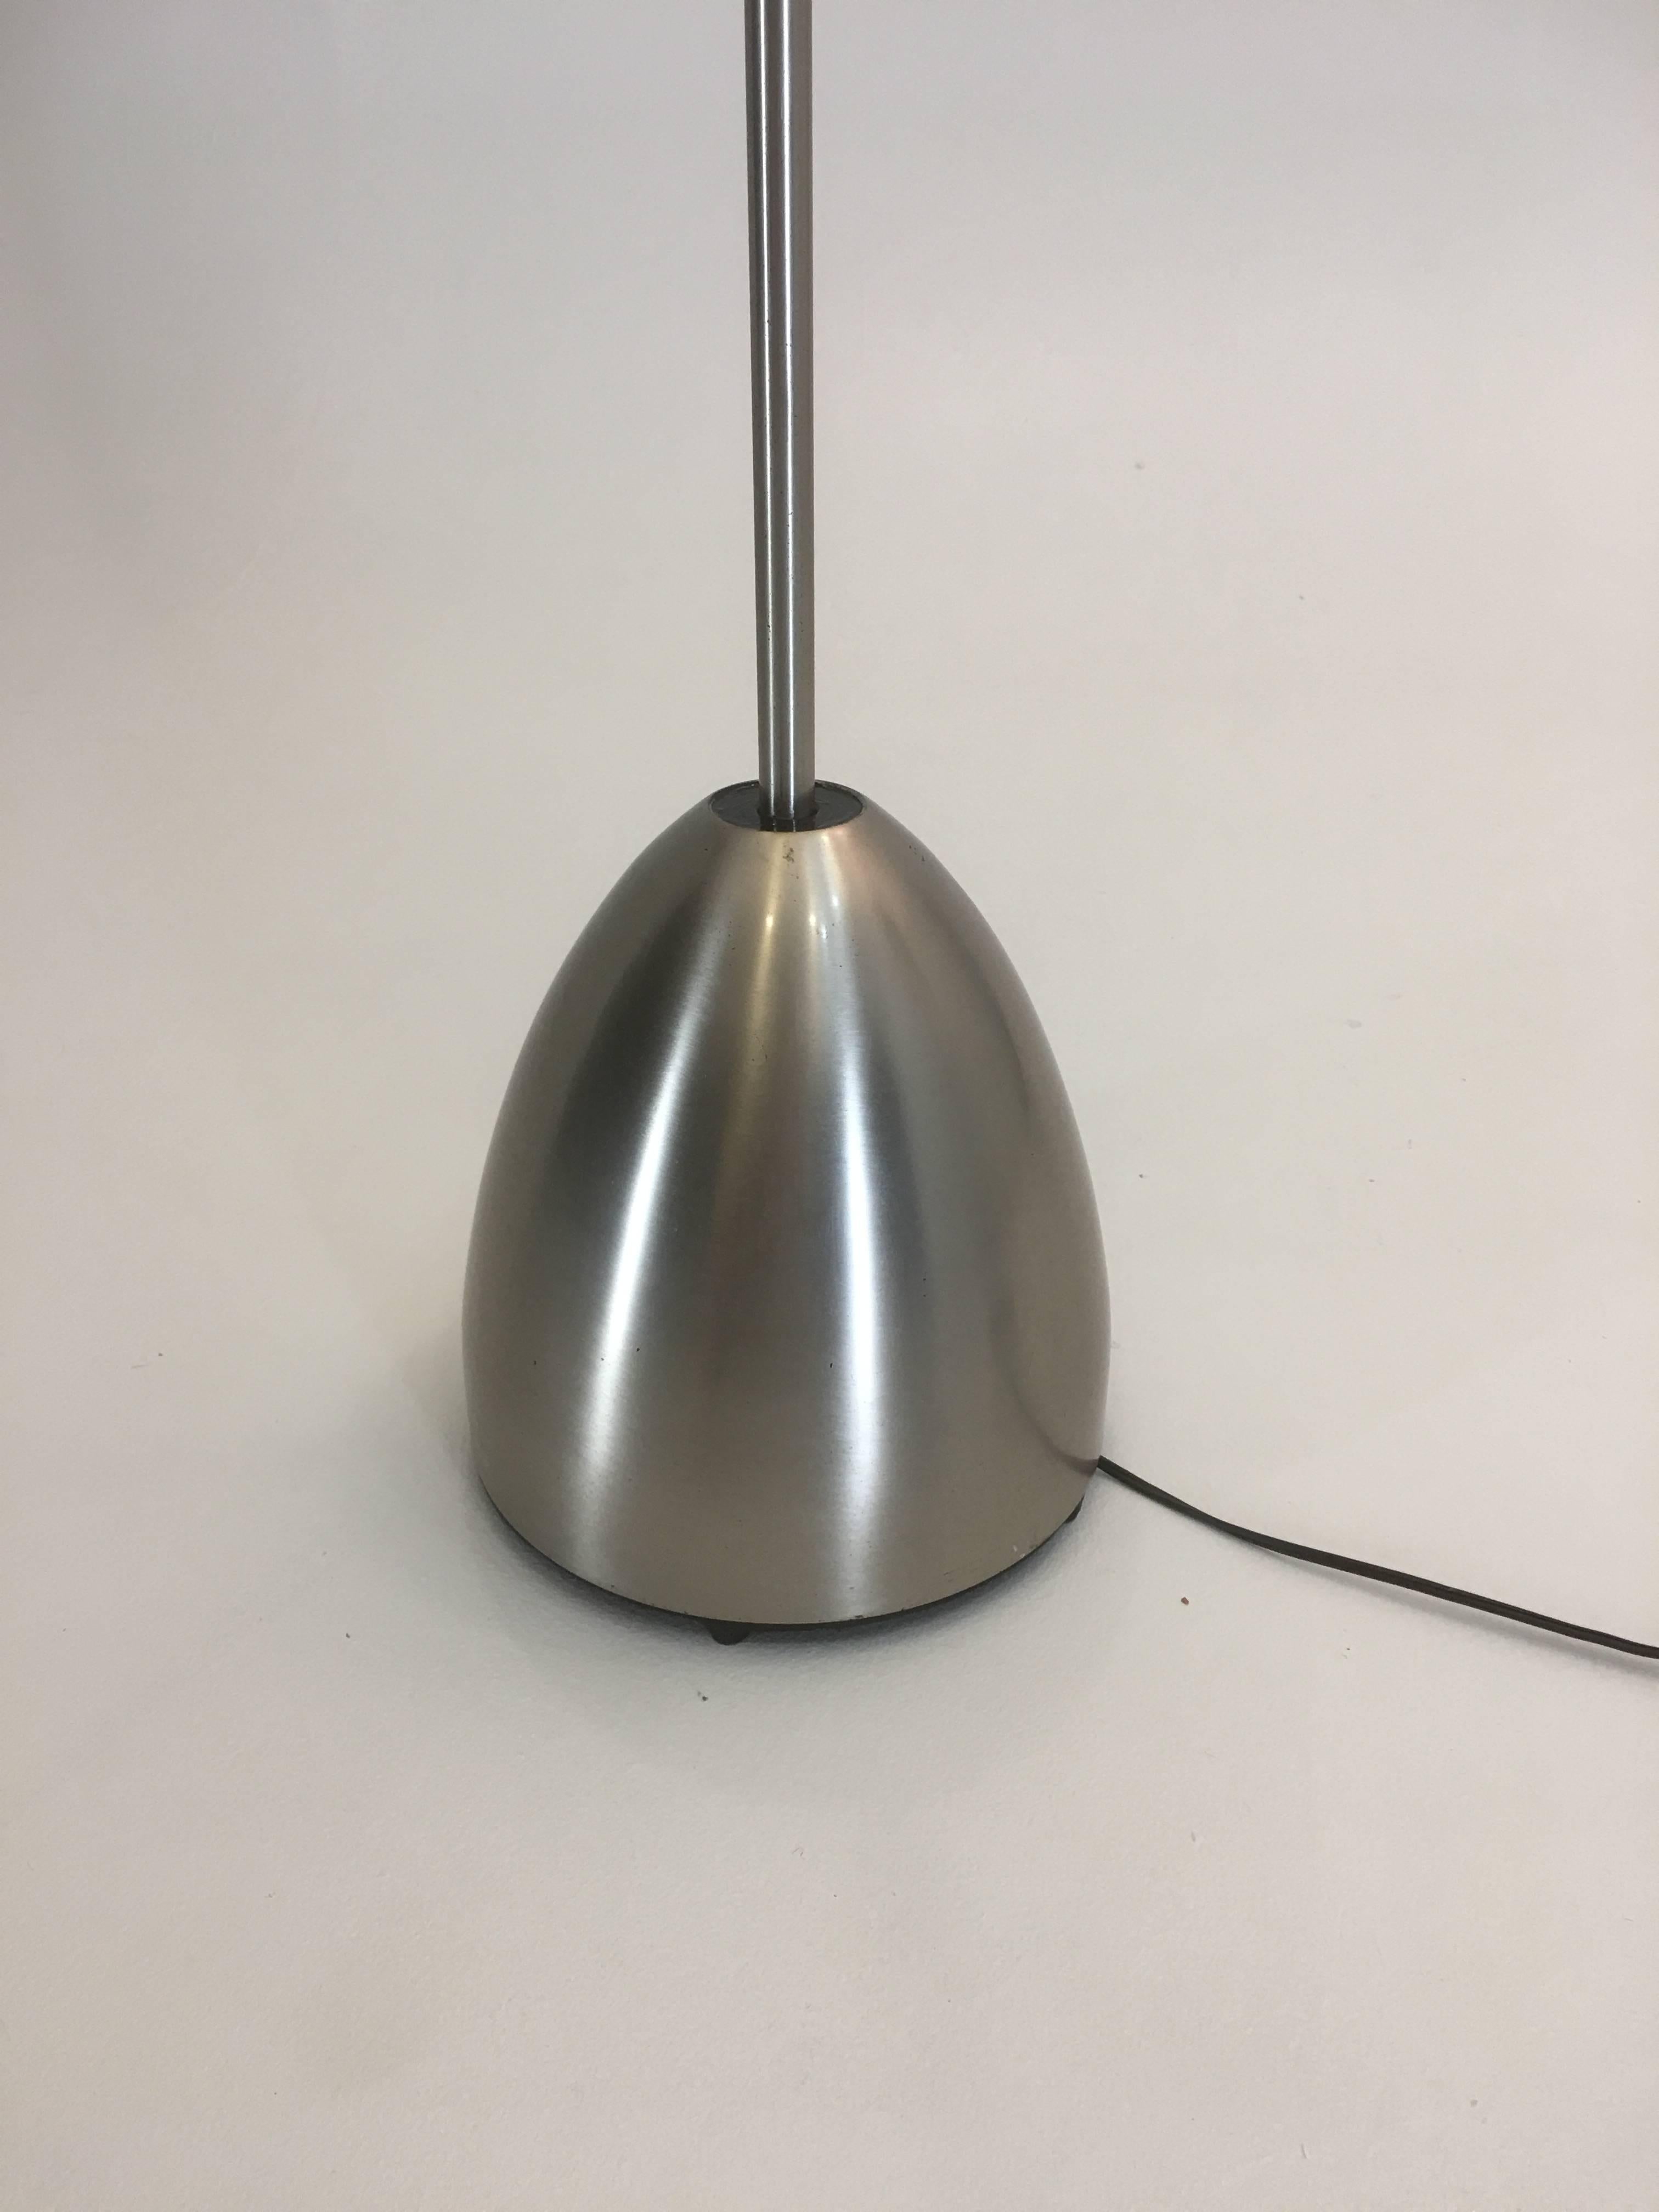 Steel Italian Floor Torchiere Lamp Attributed to Artemide